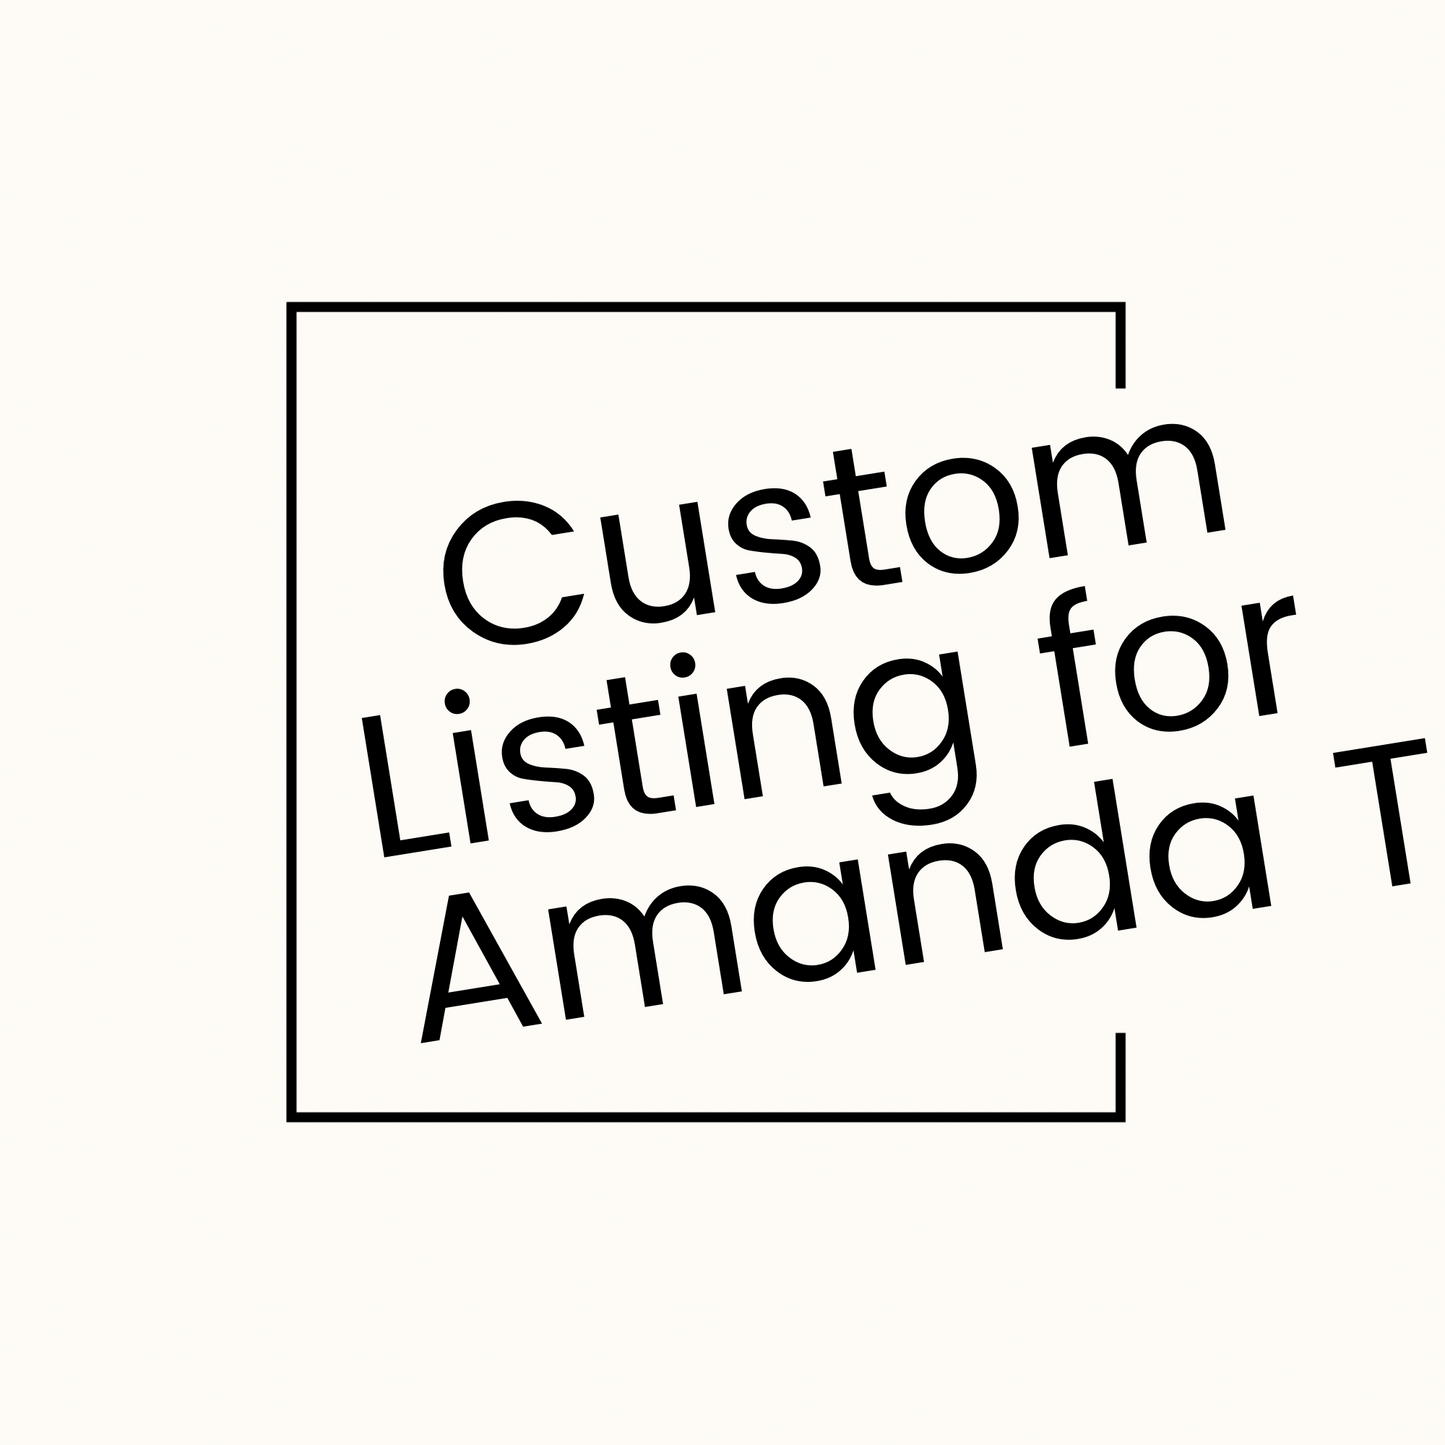 Custom listing for Amanda T